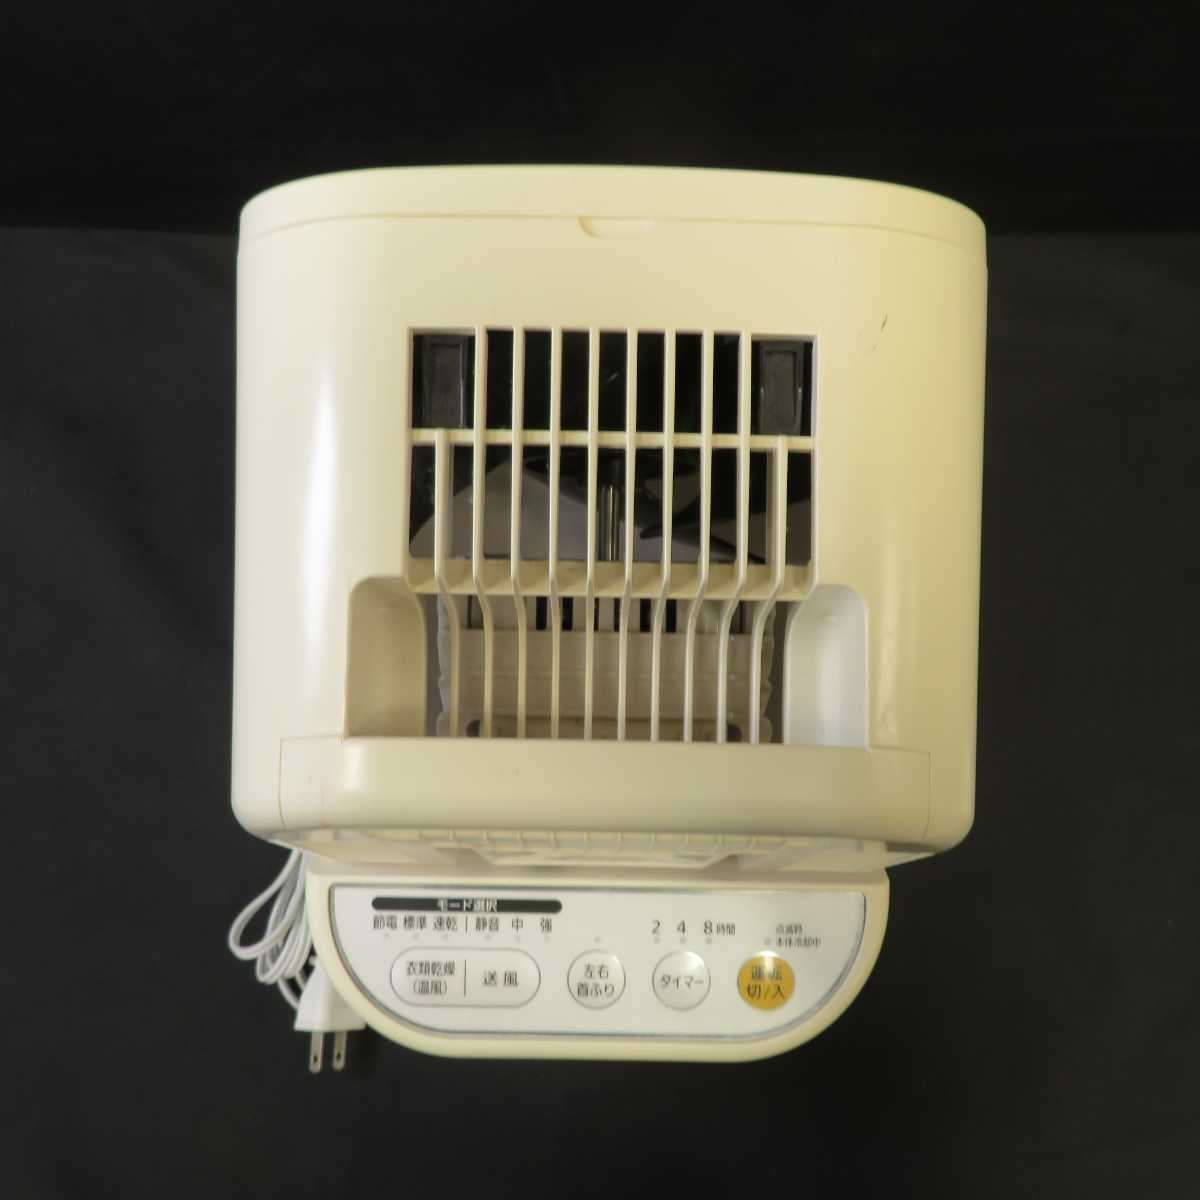 【中古】 IRIS OHYAMA 衣類乾燥機 IK-C500 ホワイト アイリスオーヤマ 乾燥機 (BX6)